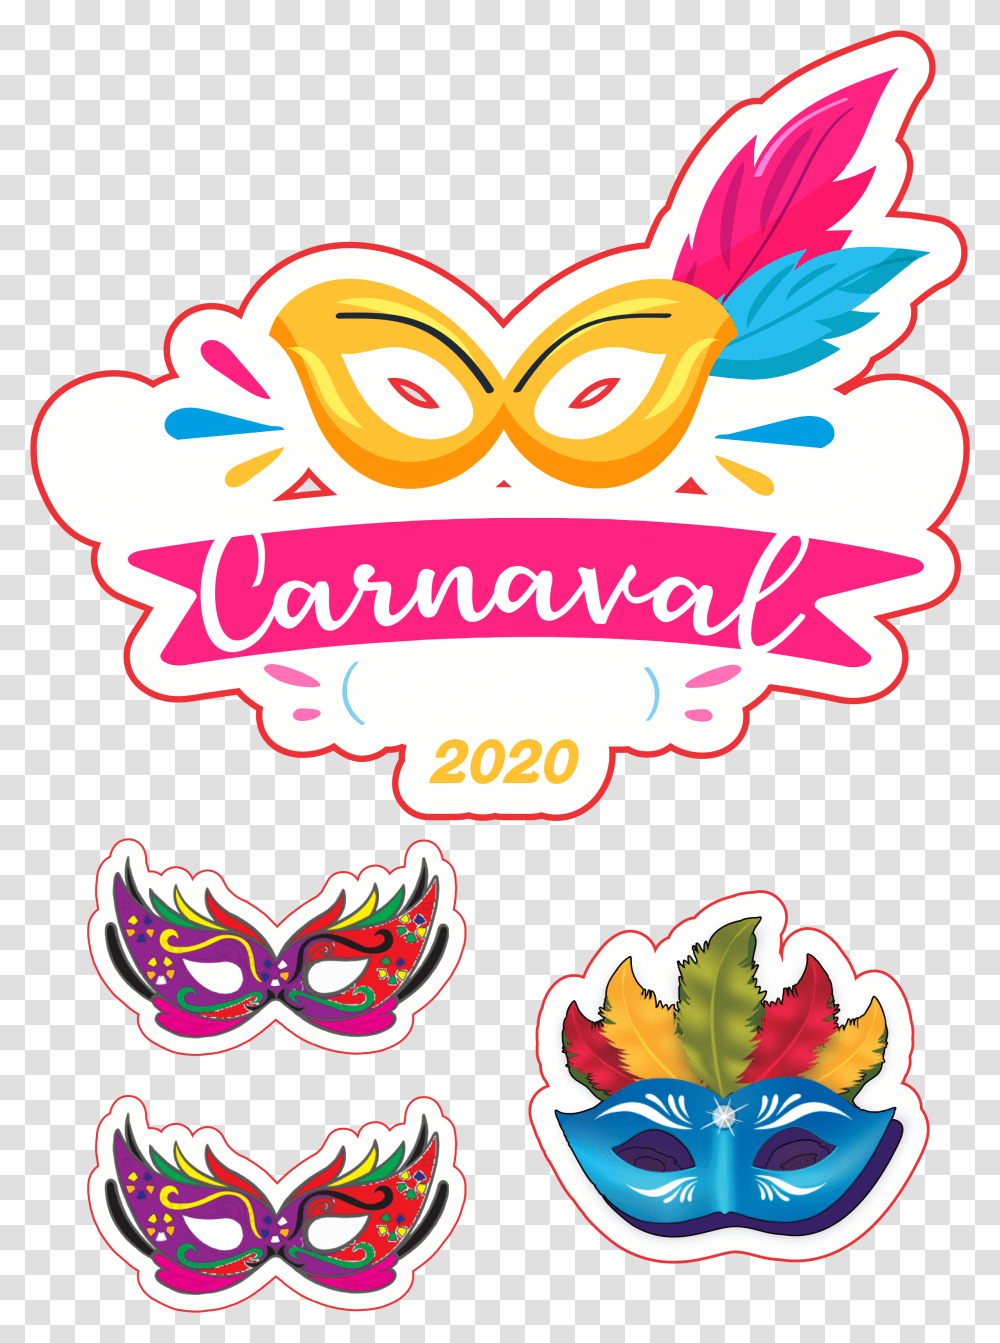 Carnaval 2020, Label Transparent Png